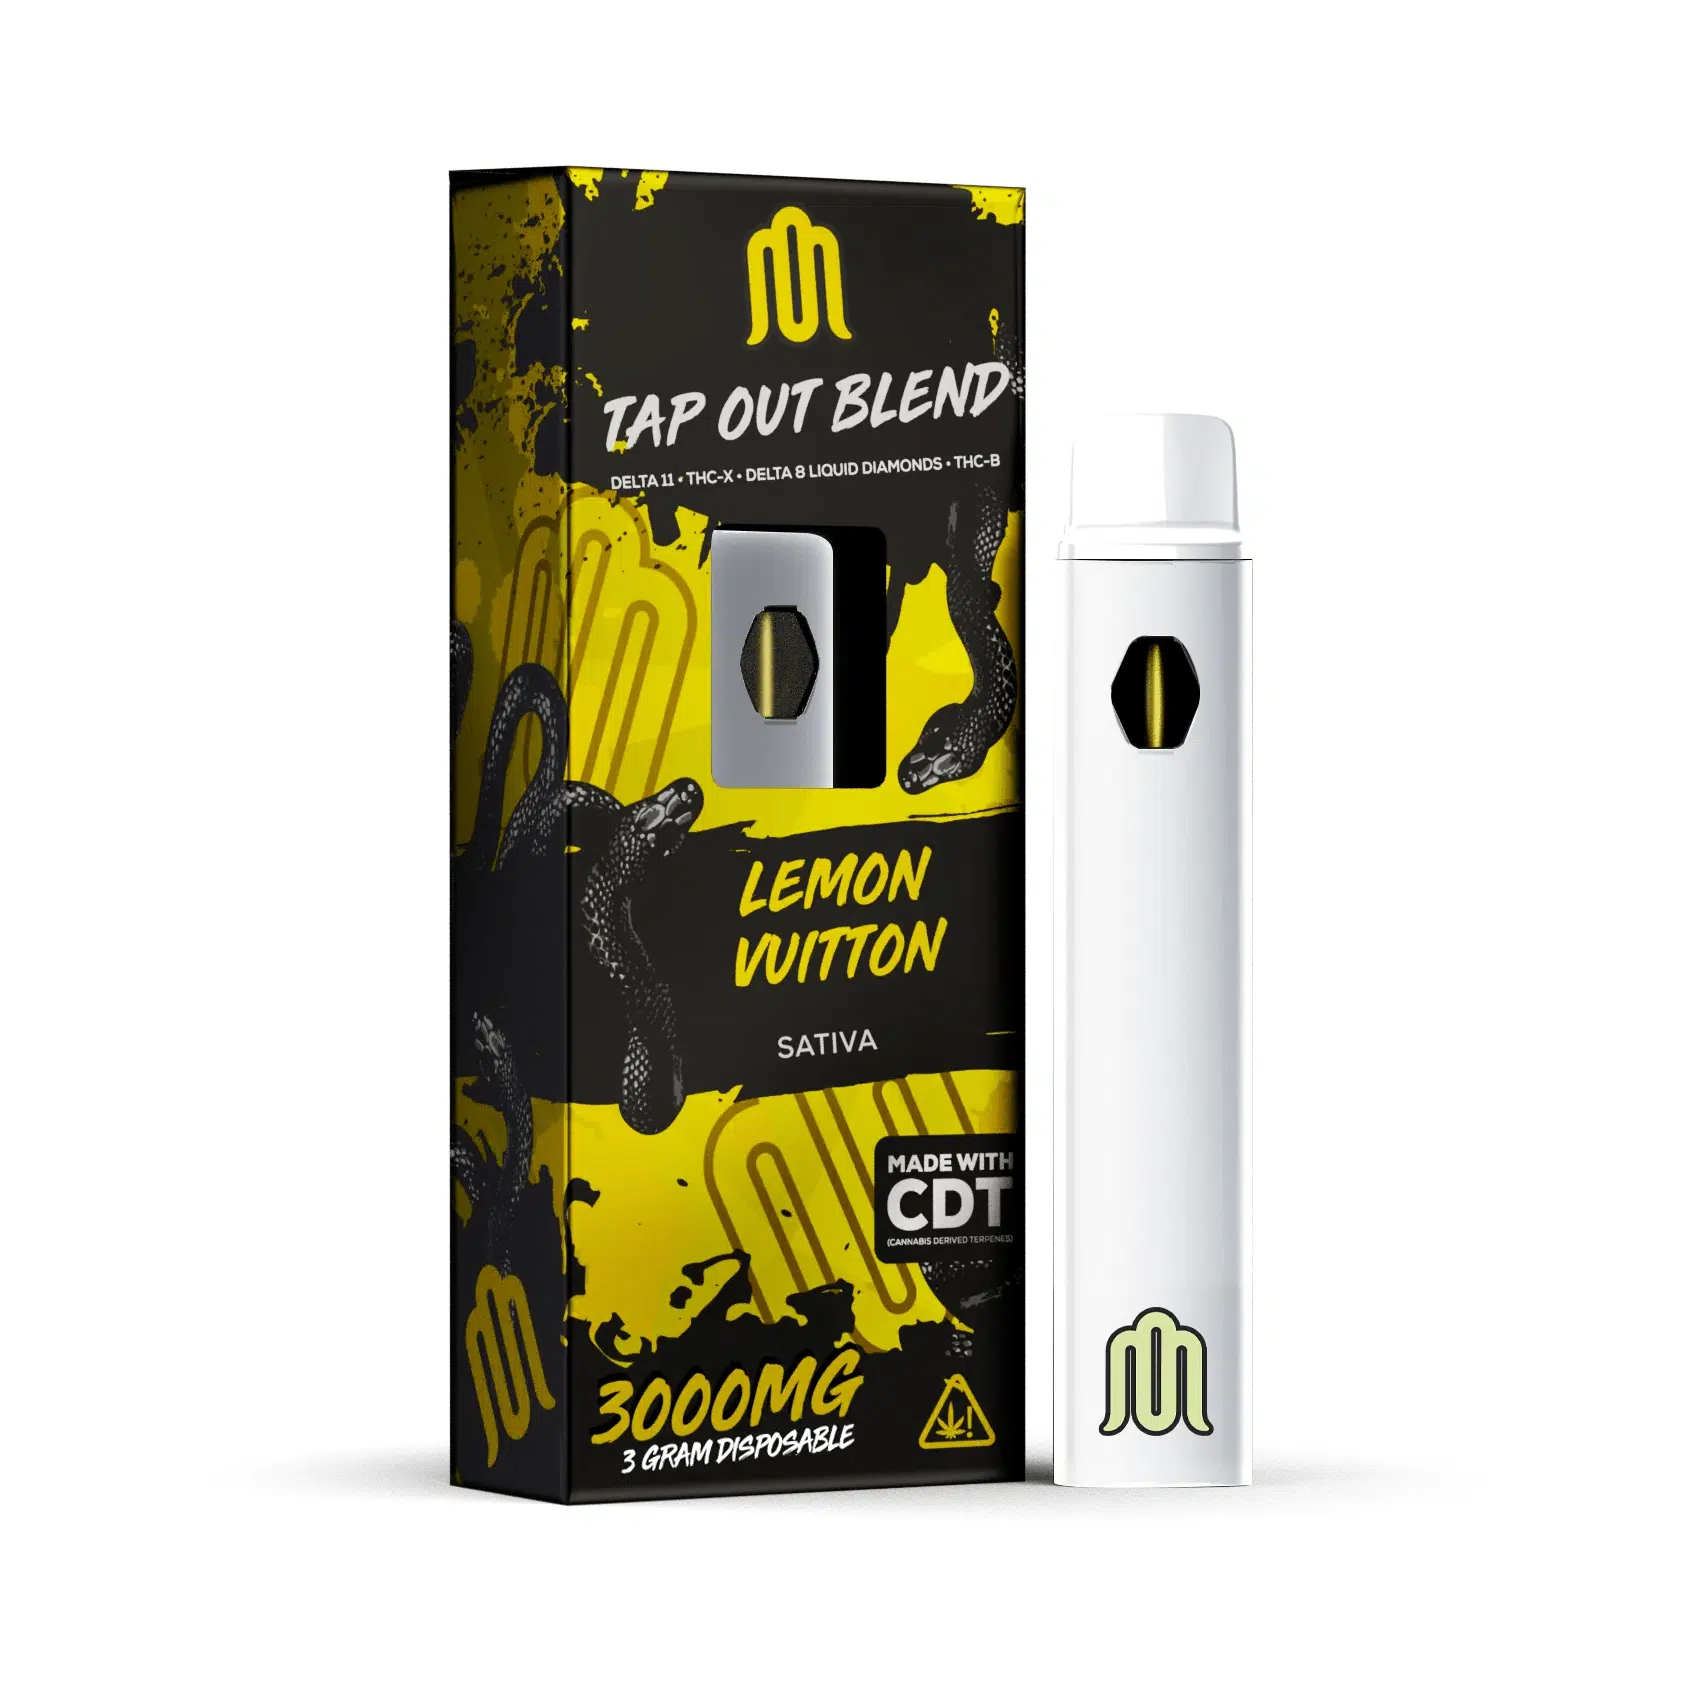 Modus tap out blend disposables lemon vuitton